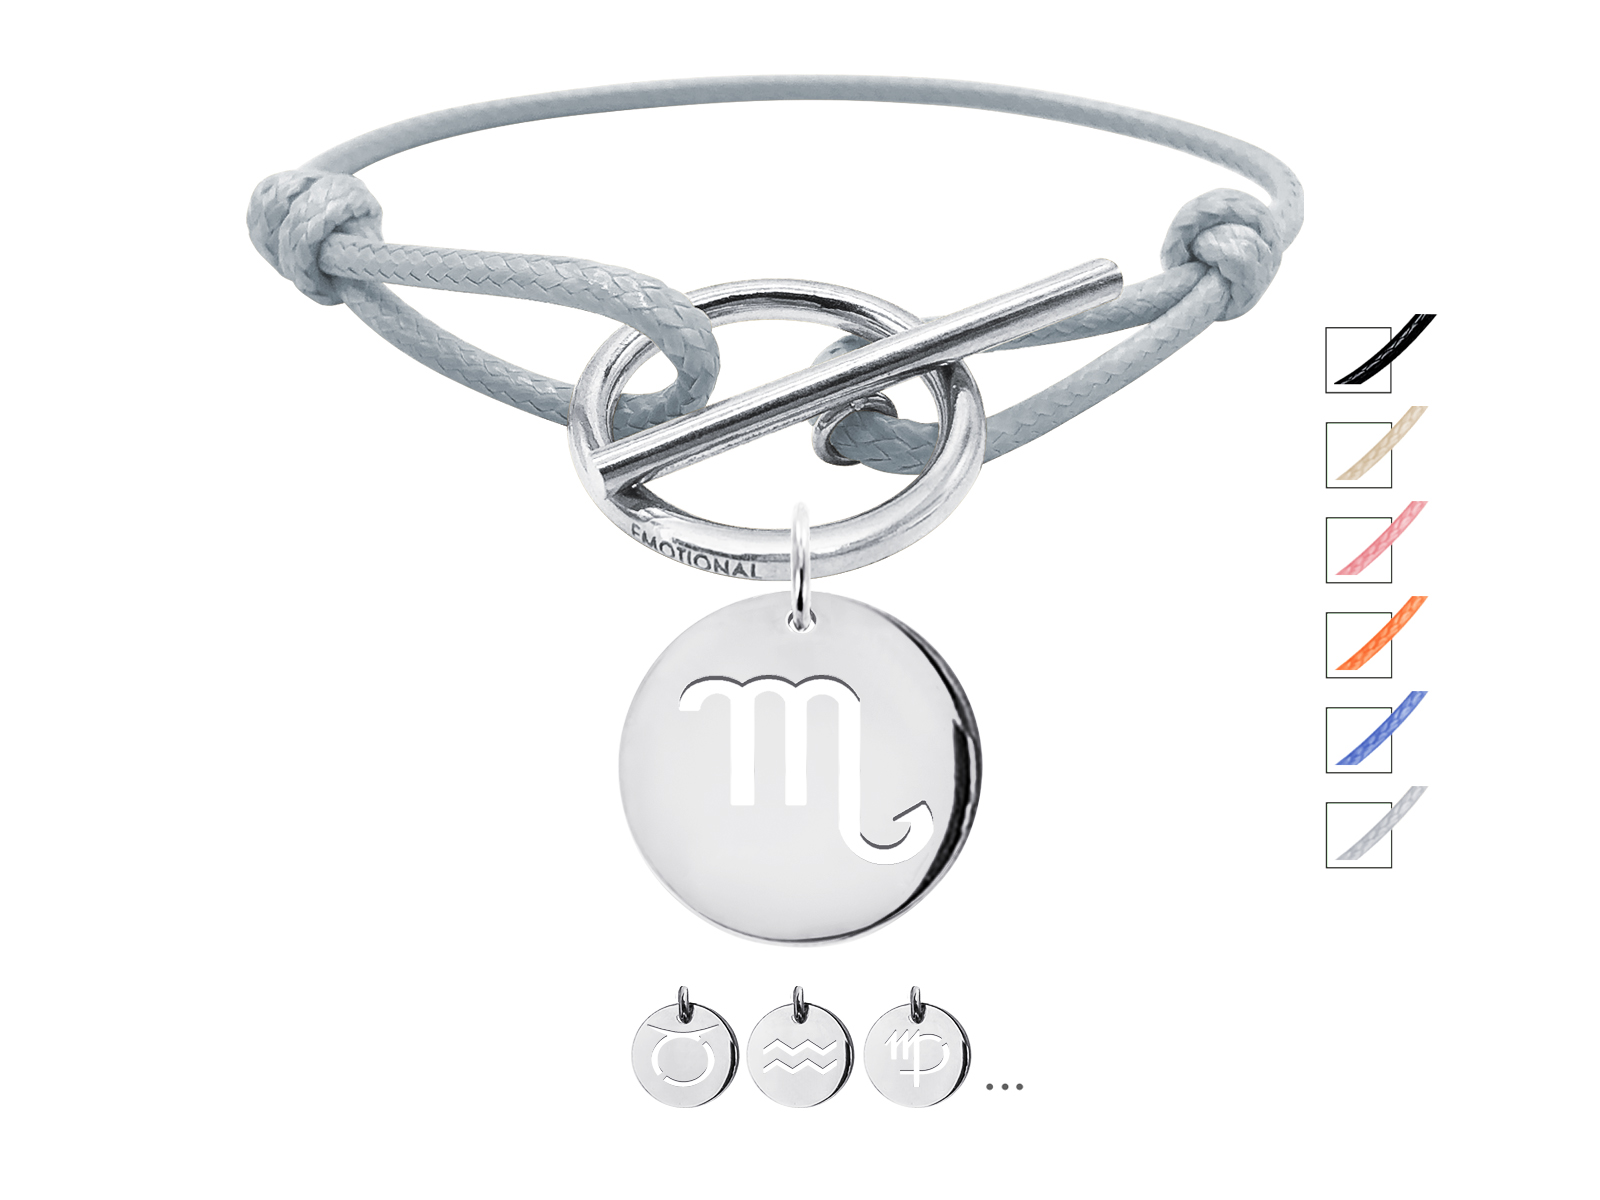 Bracelet cordon ajustable gris avec fermoir T agrémenté d'une pampille signe astrologique en acier inoxydable argenté